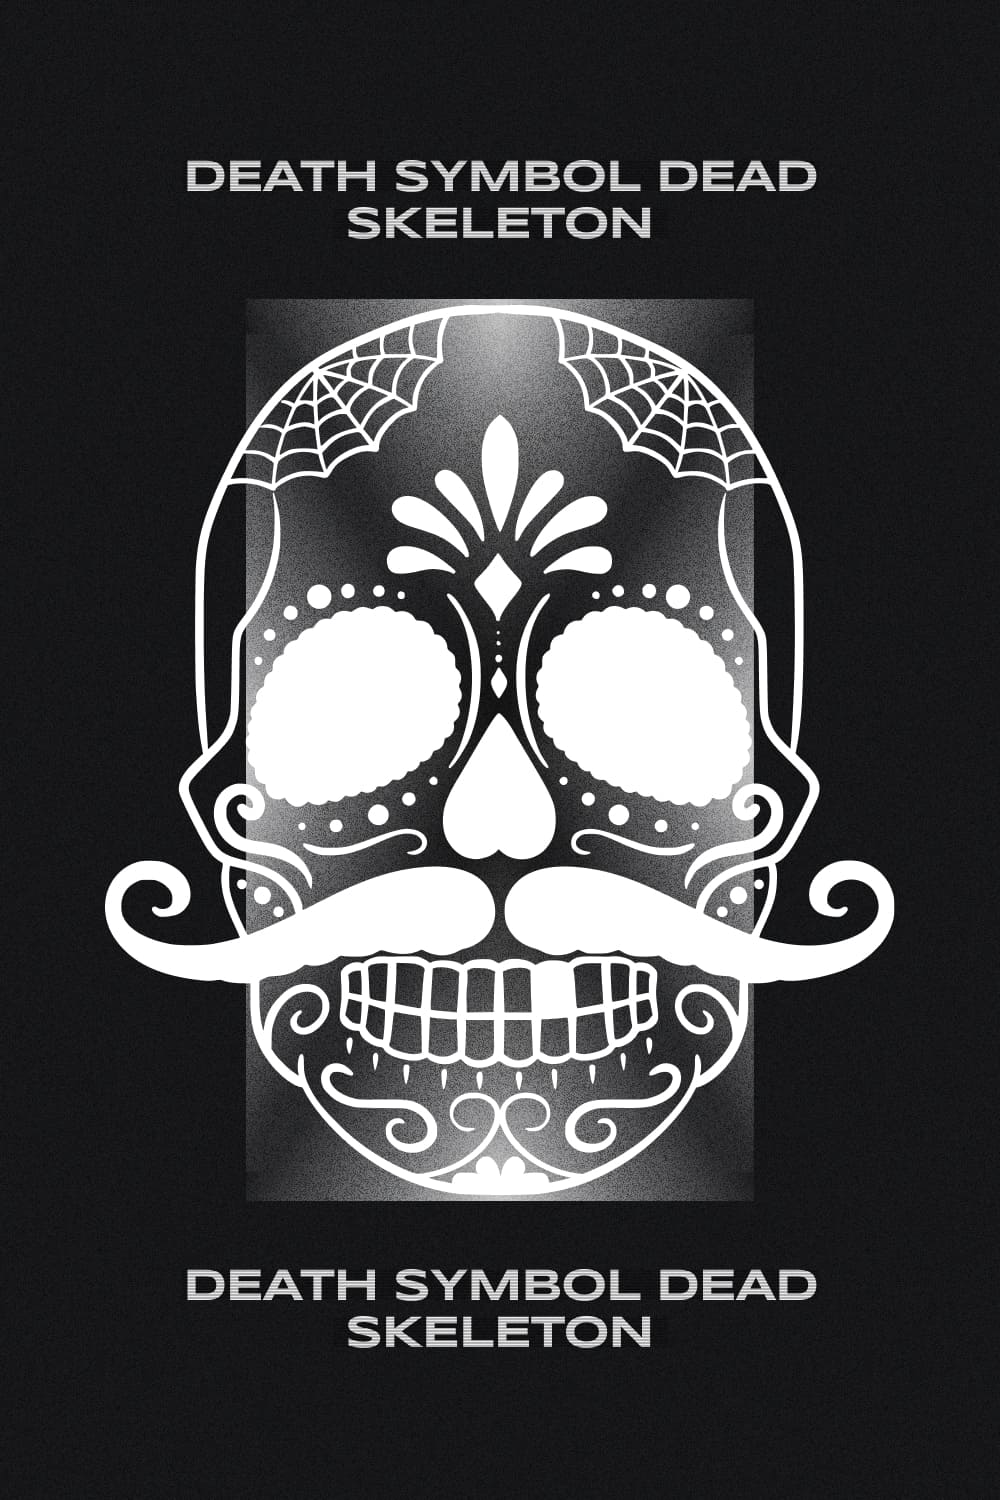 death symbol dead skeleton pinterest image.